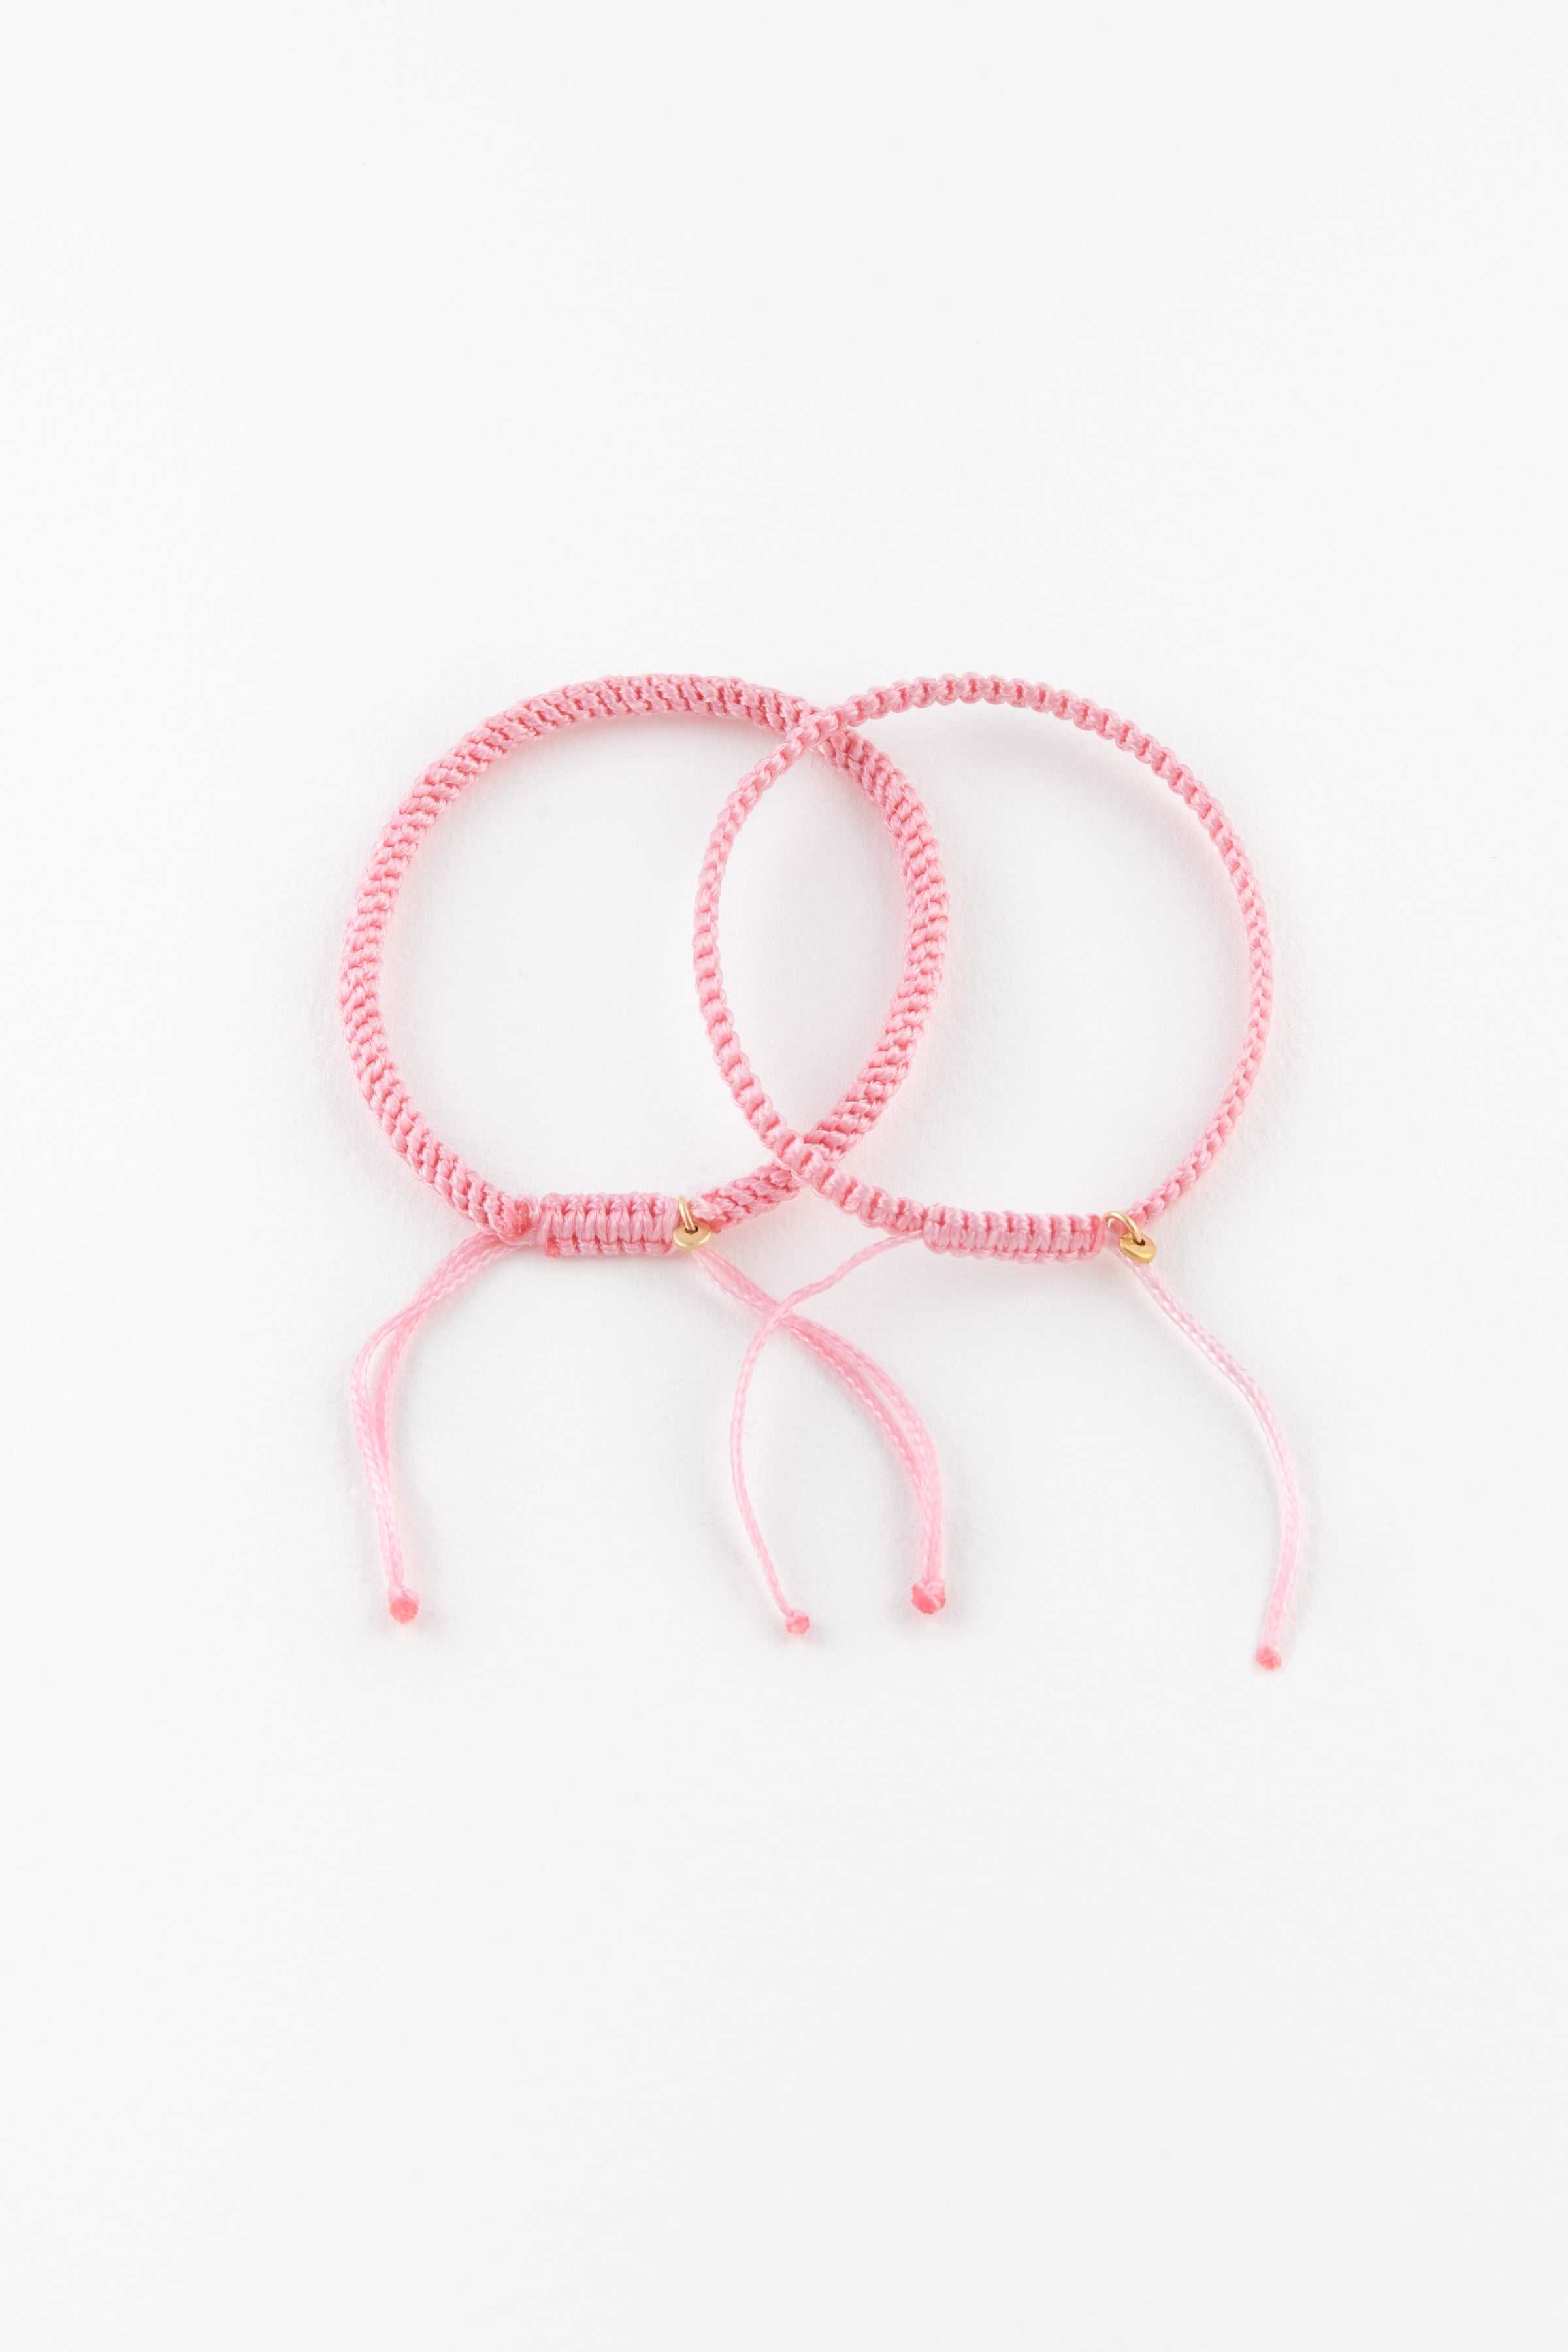 Hand Knitted Lebanese Flag Bracelet | CKKoetter Accessories